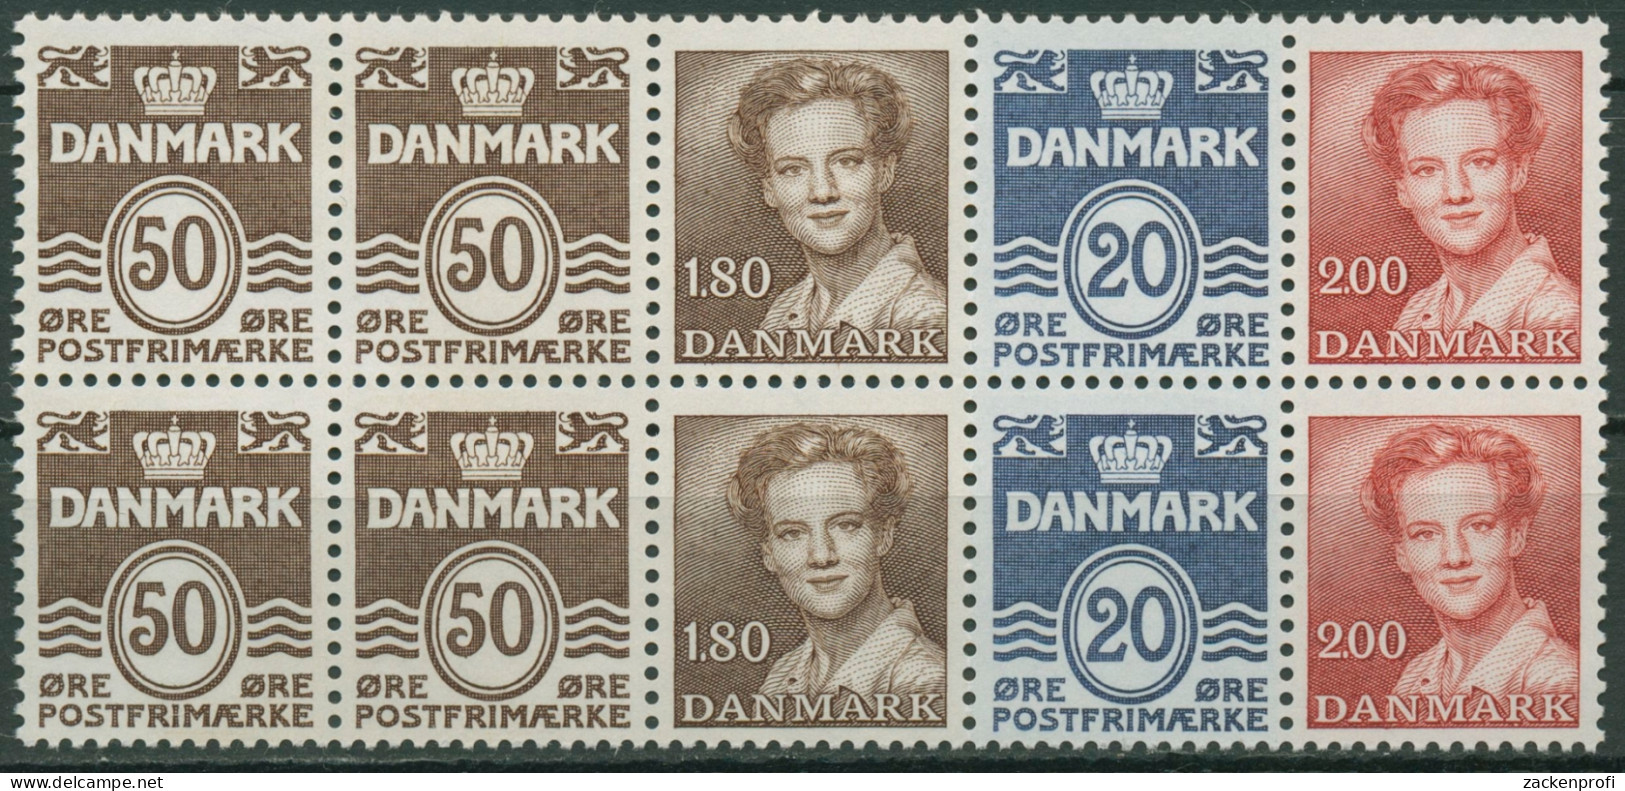 Dänemark 1974 Markenheftchenblatt H-Bl. 19 Postfrisch (C96552) - Booklets